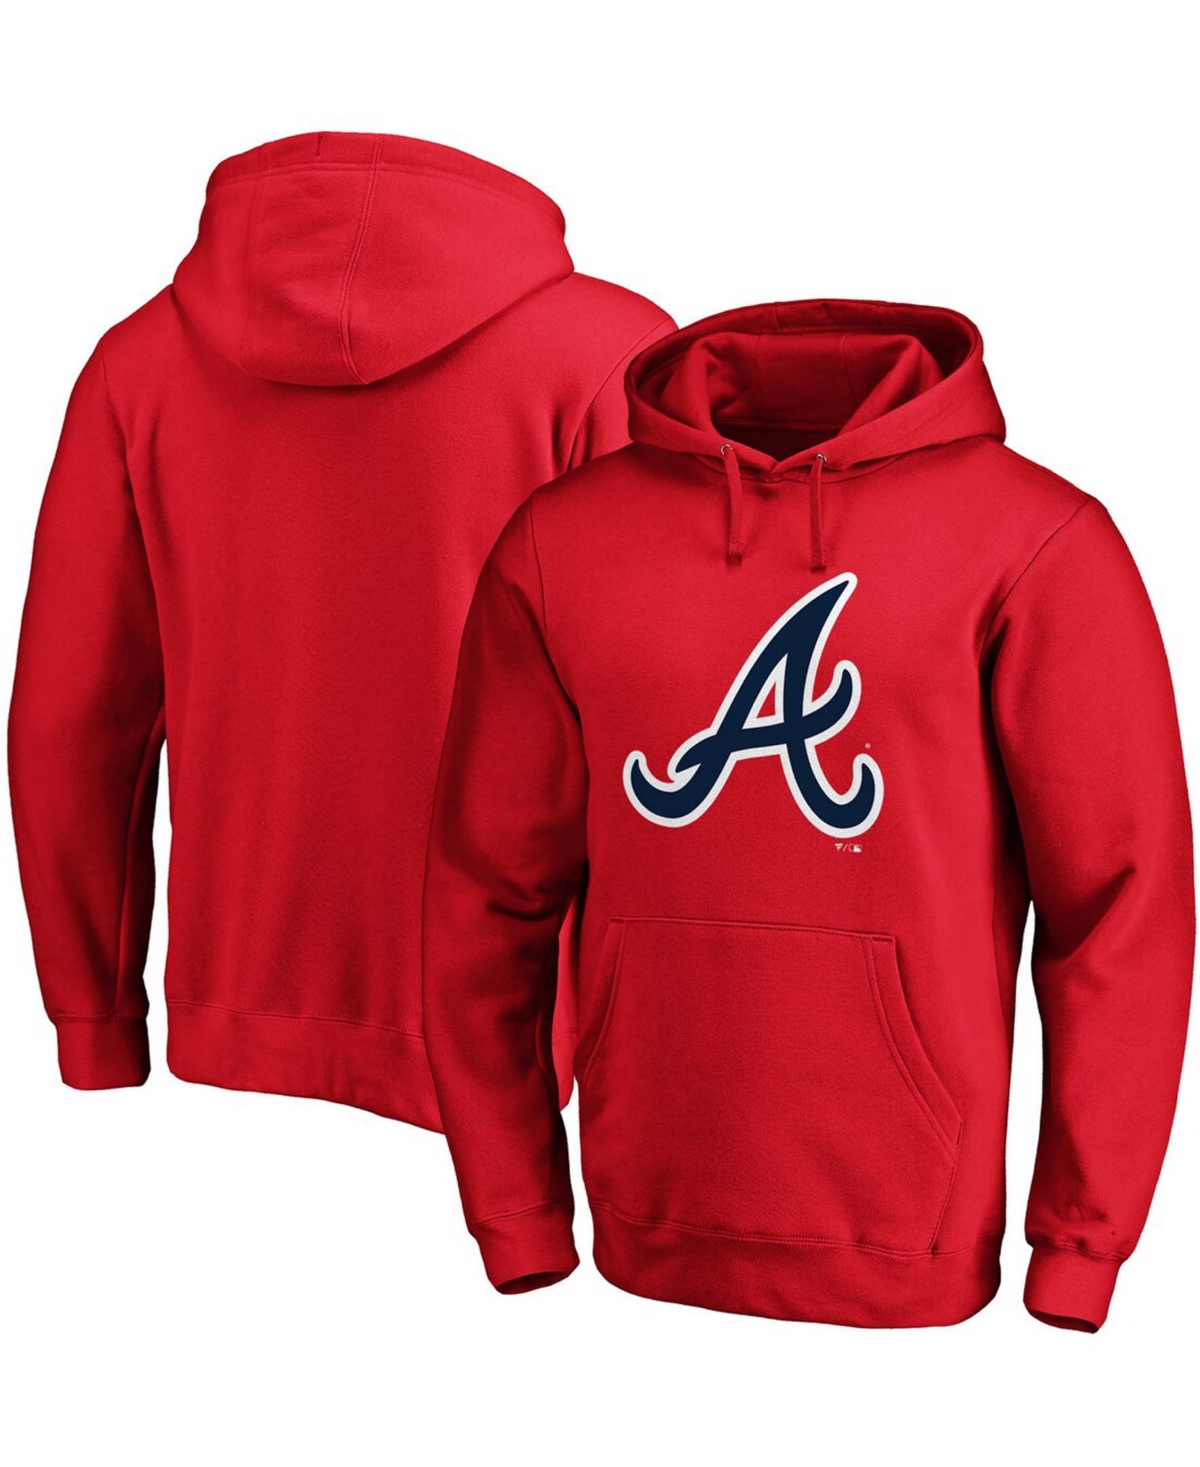 Fanatics Men's Red Atlanta Braves Official Logo Pullover Hoodie